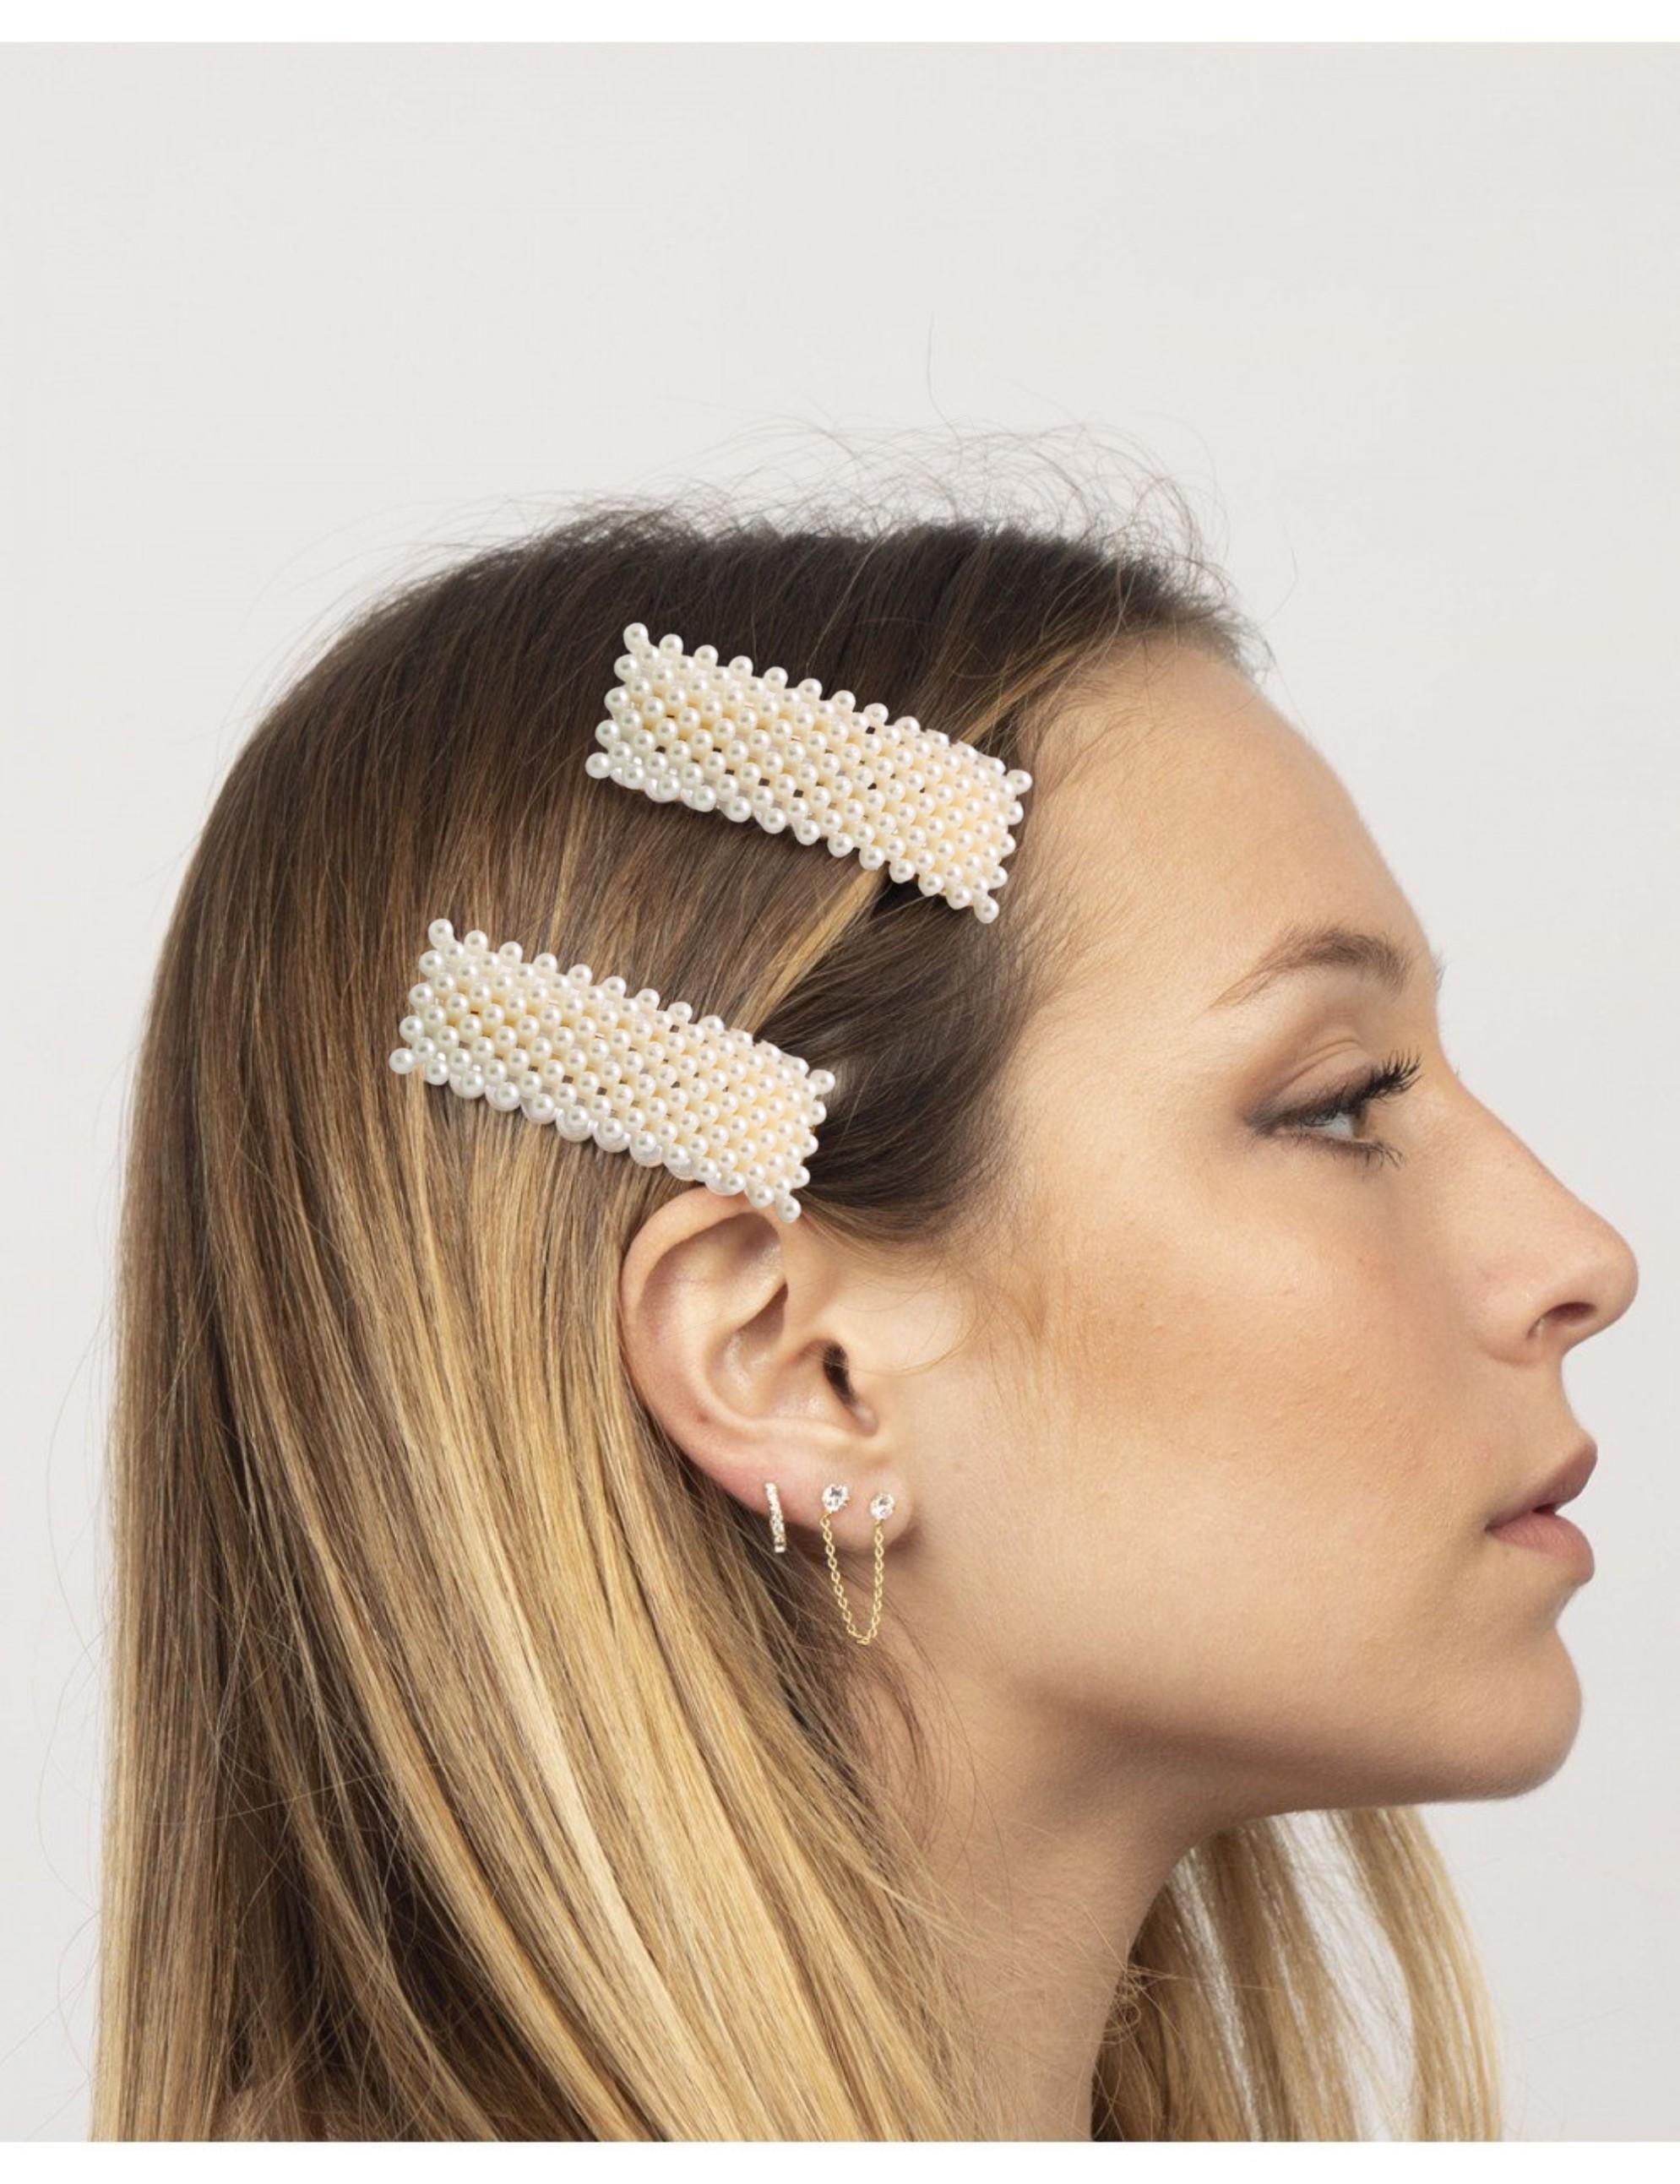 Snowpearl 06 Pieces Pearl Hair Clips, Pins Barrette, Hair Clips for Women  Girls Fashion Hair Accessories -